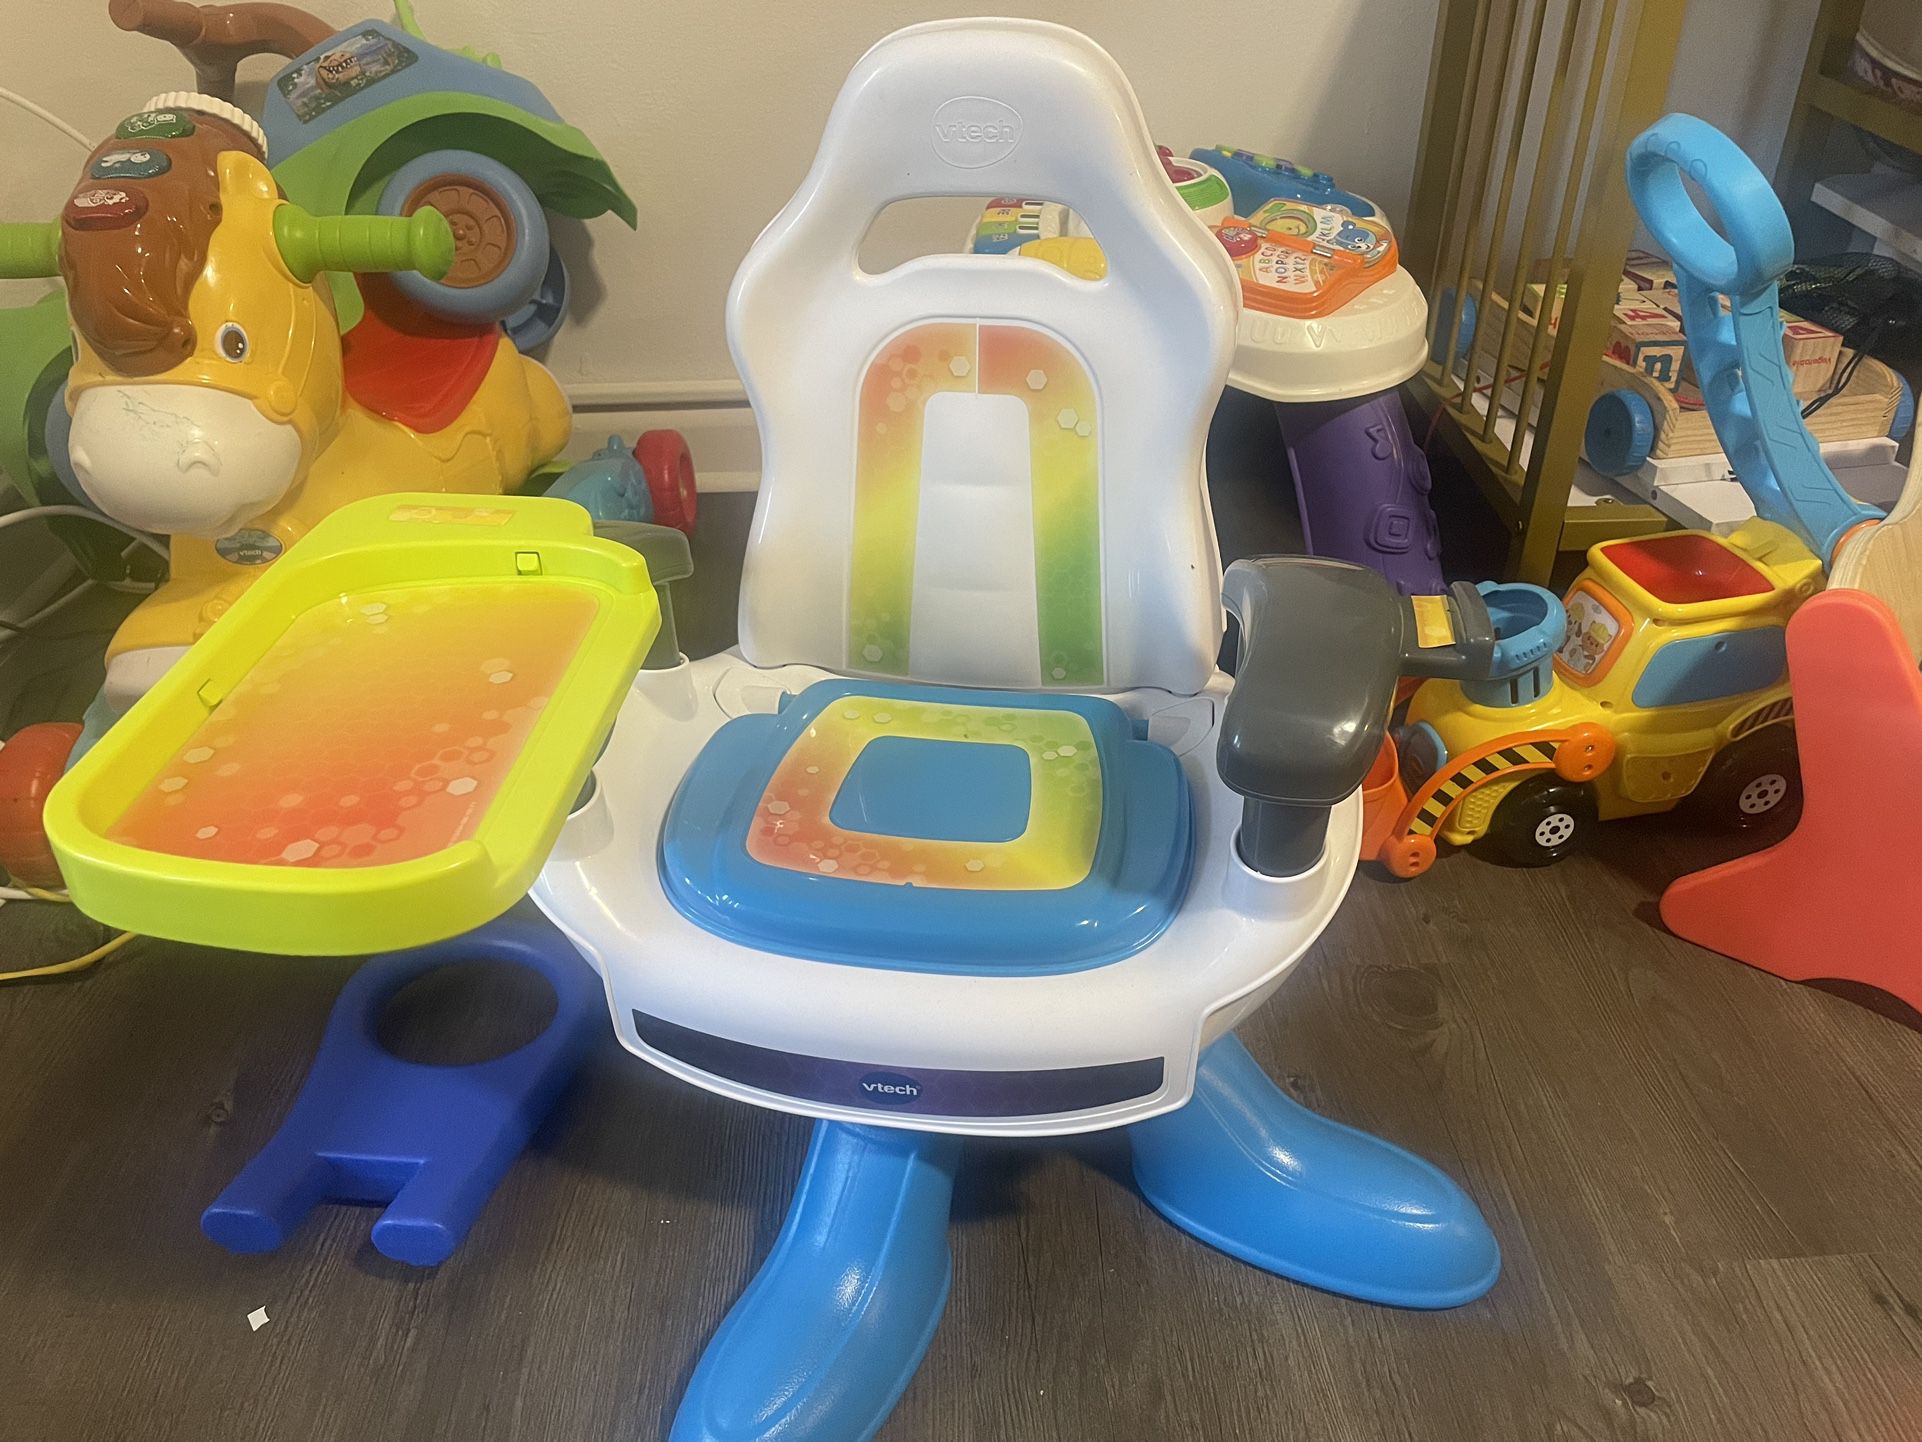 Toddler gaming Chair